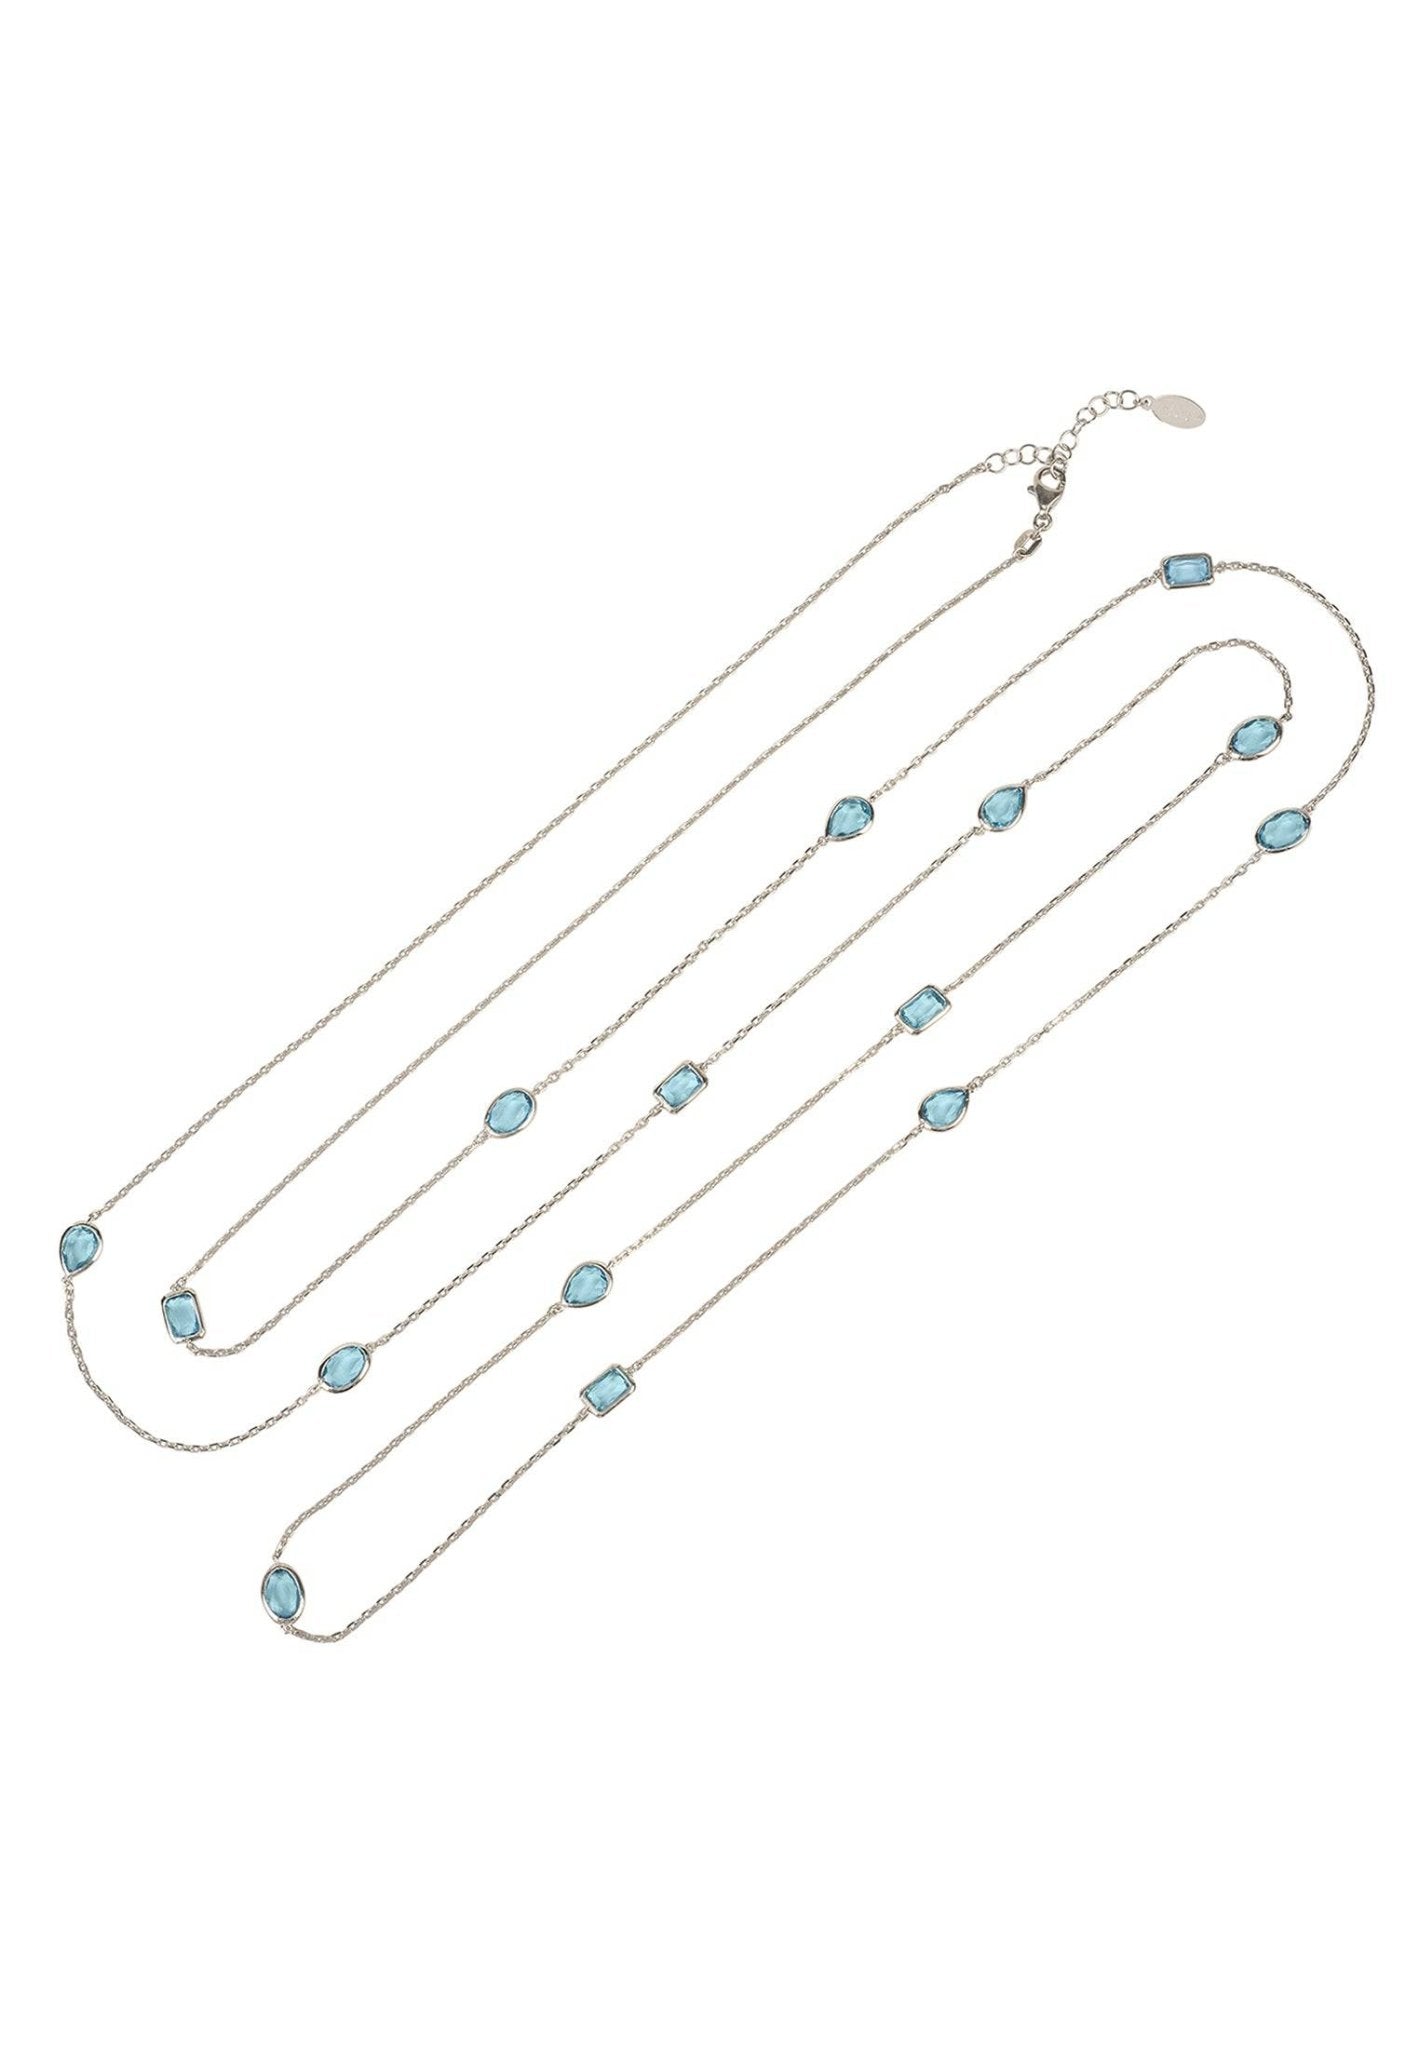 Venice 120Cm Long Chain Necklace Silver Blue Topaz - LATELITA Necklaces